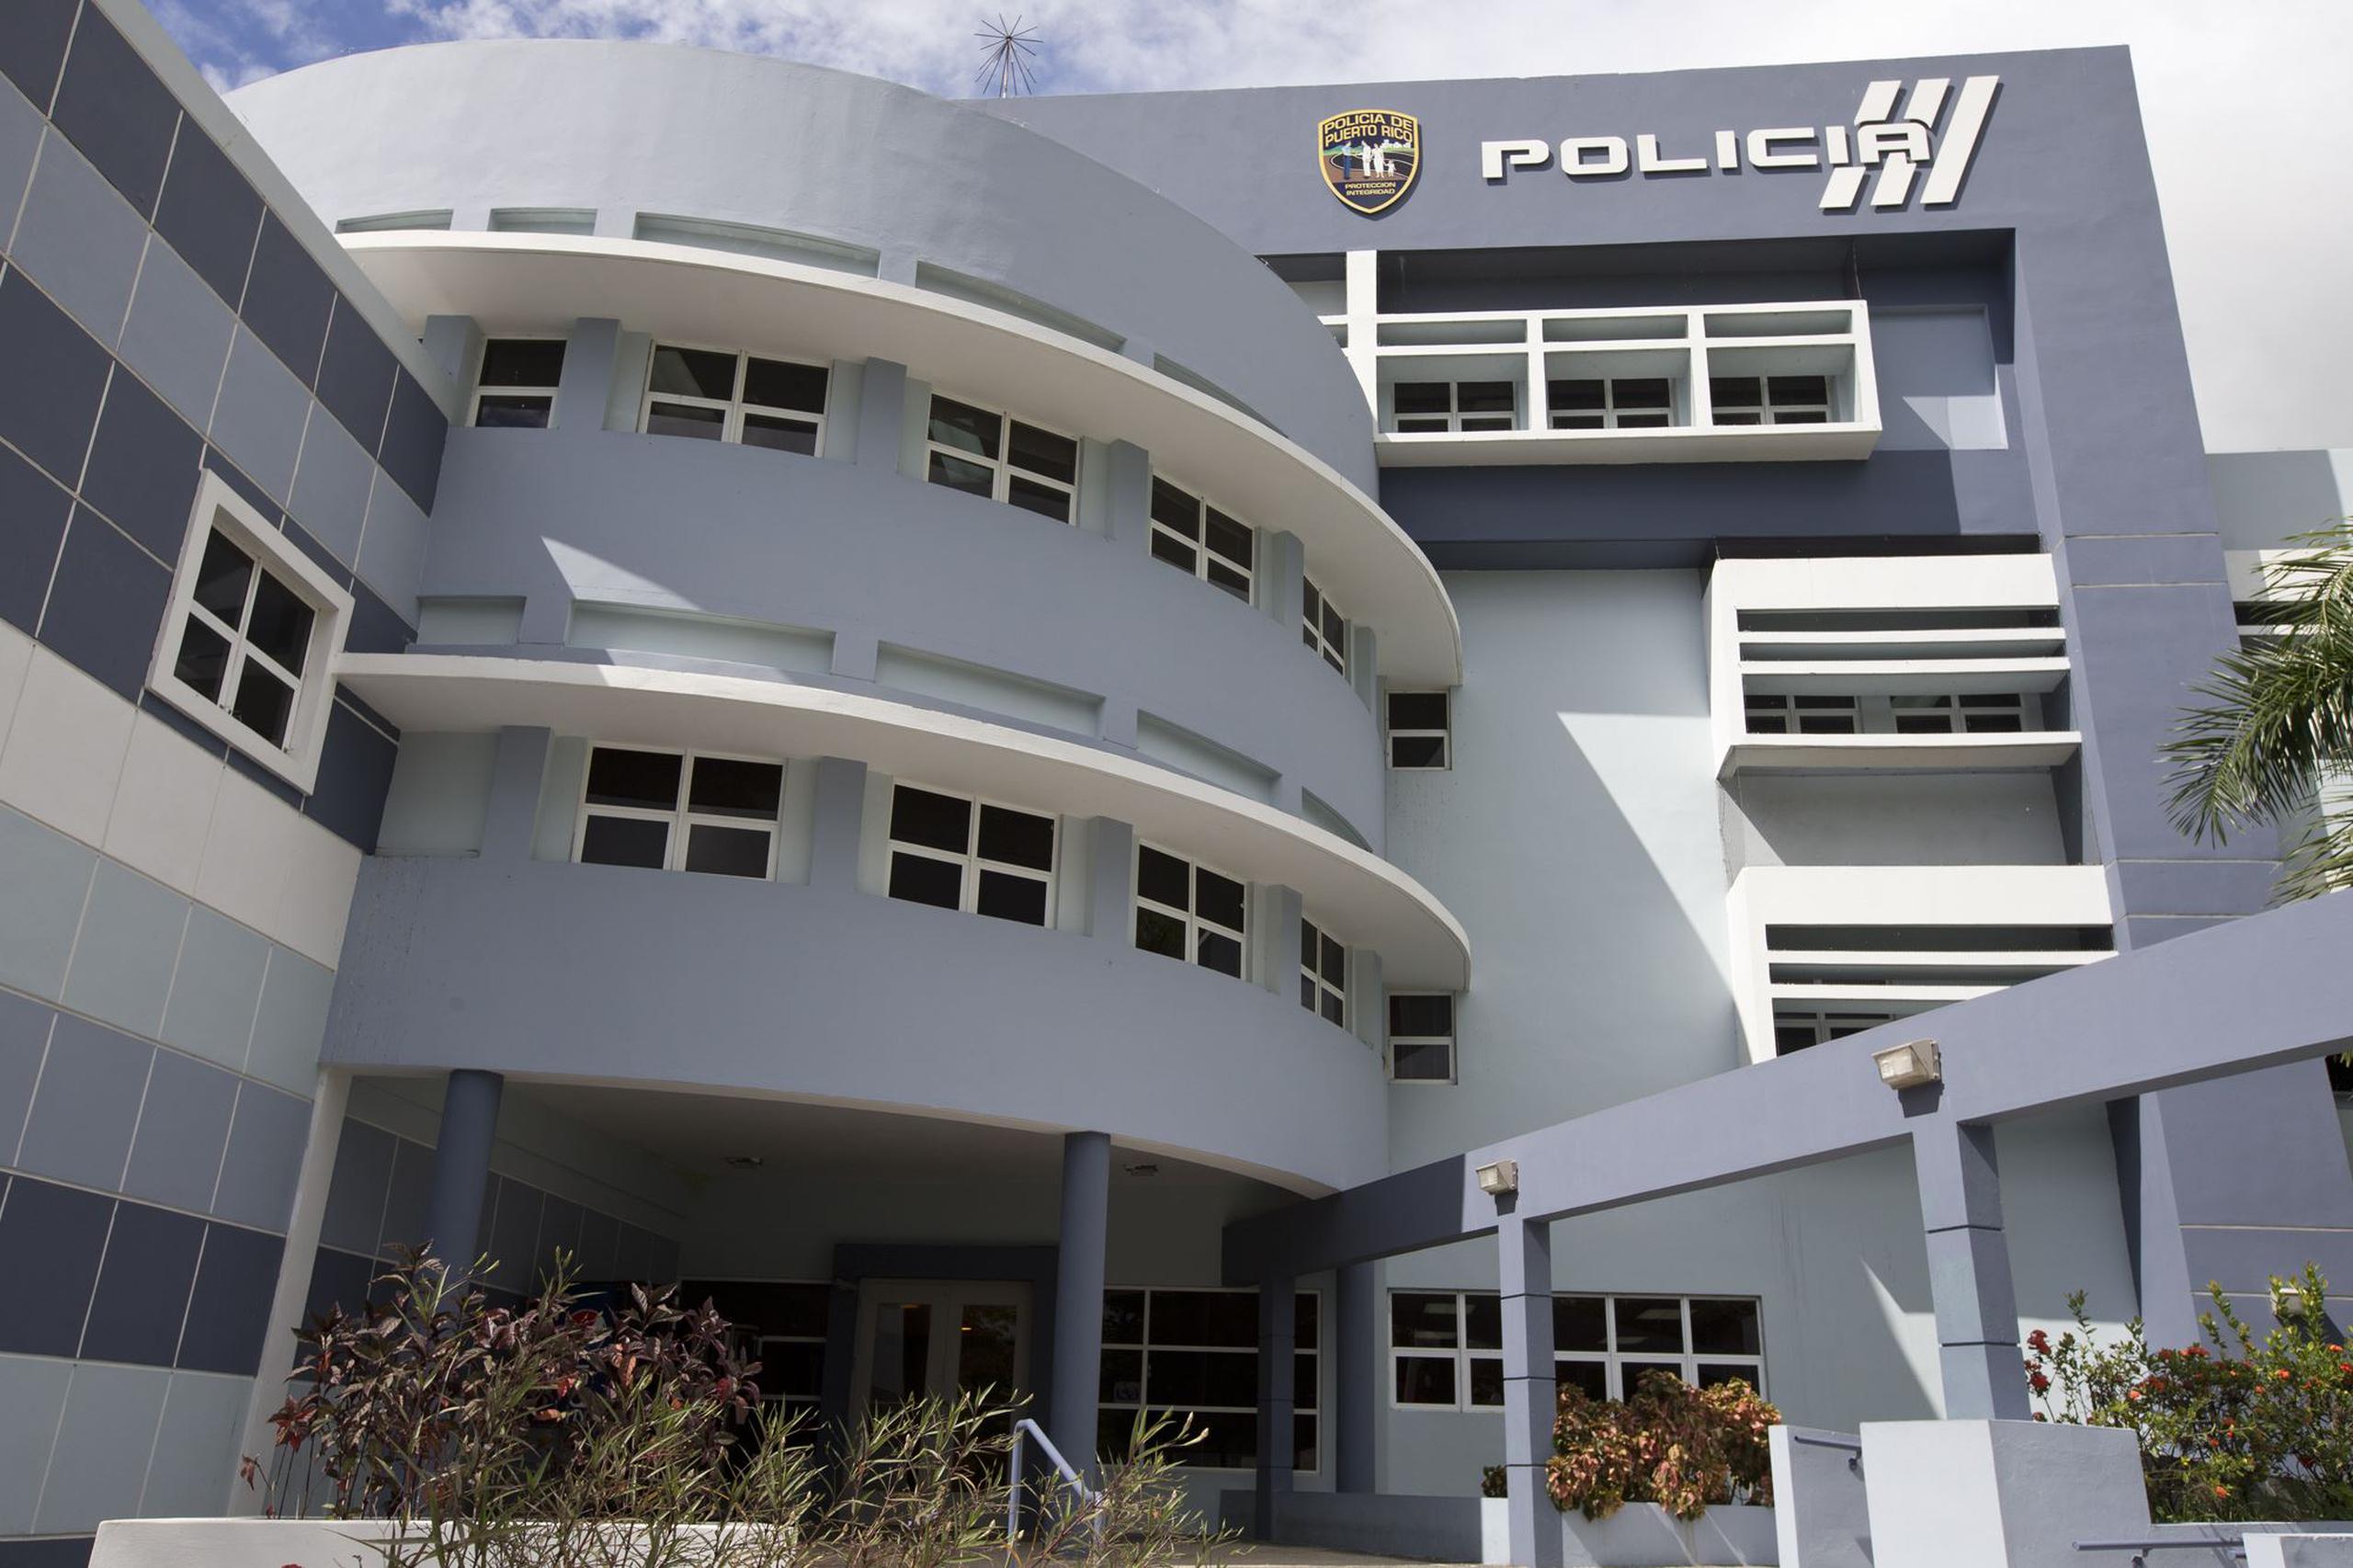 El director del Cuerpo de Investigación Criminal del área de Guayama, teniente coronel Diosdado Pérez, confirmó el arresto del sospechoso. (Archivo/GFR)